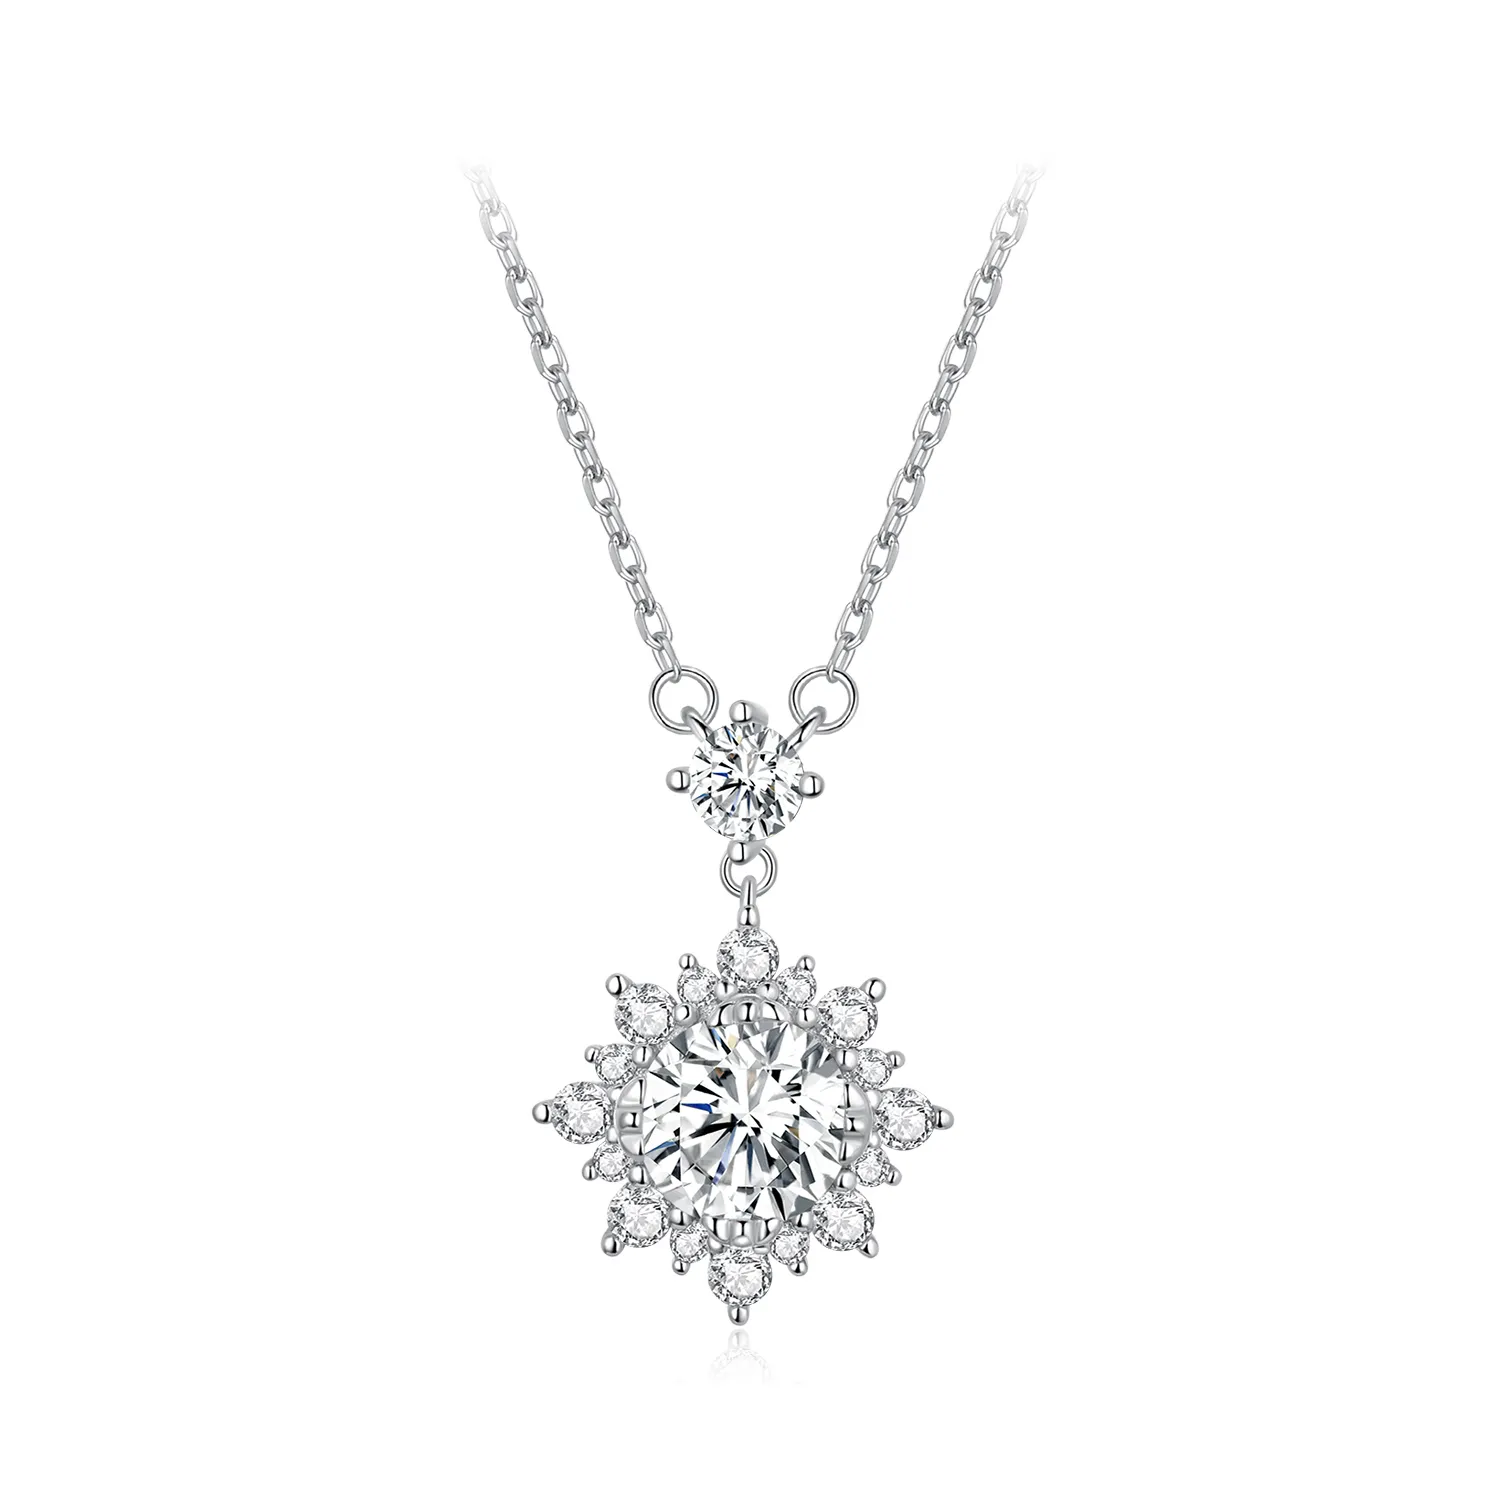 Pandora Style Diamond Necklace - MSN017